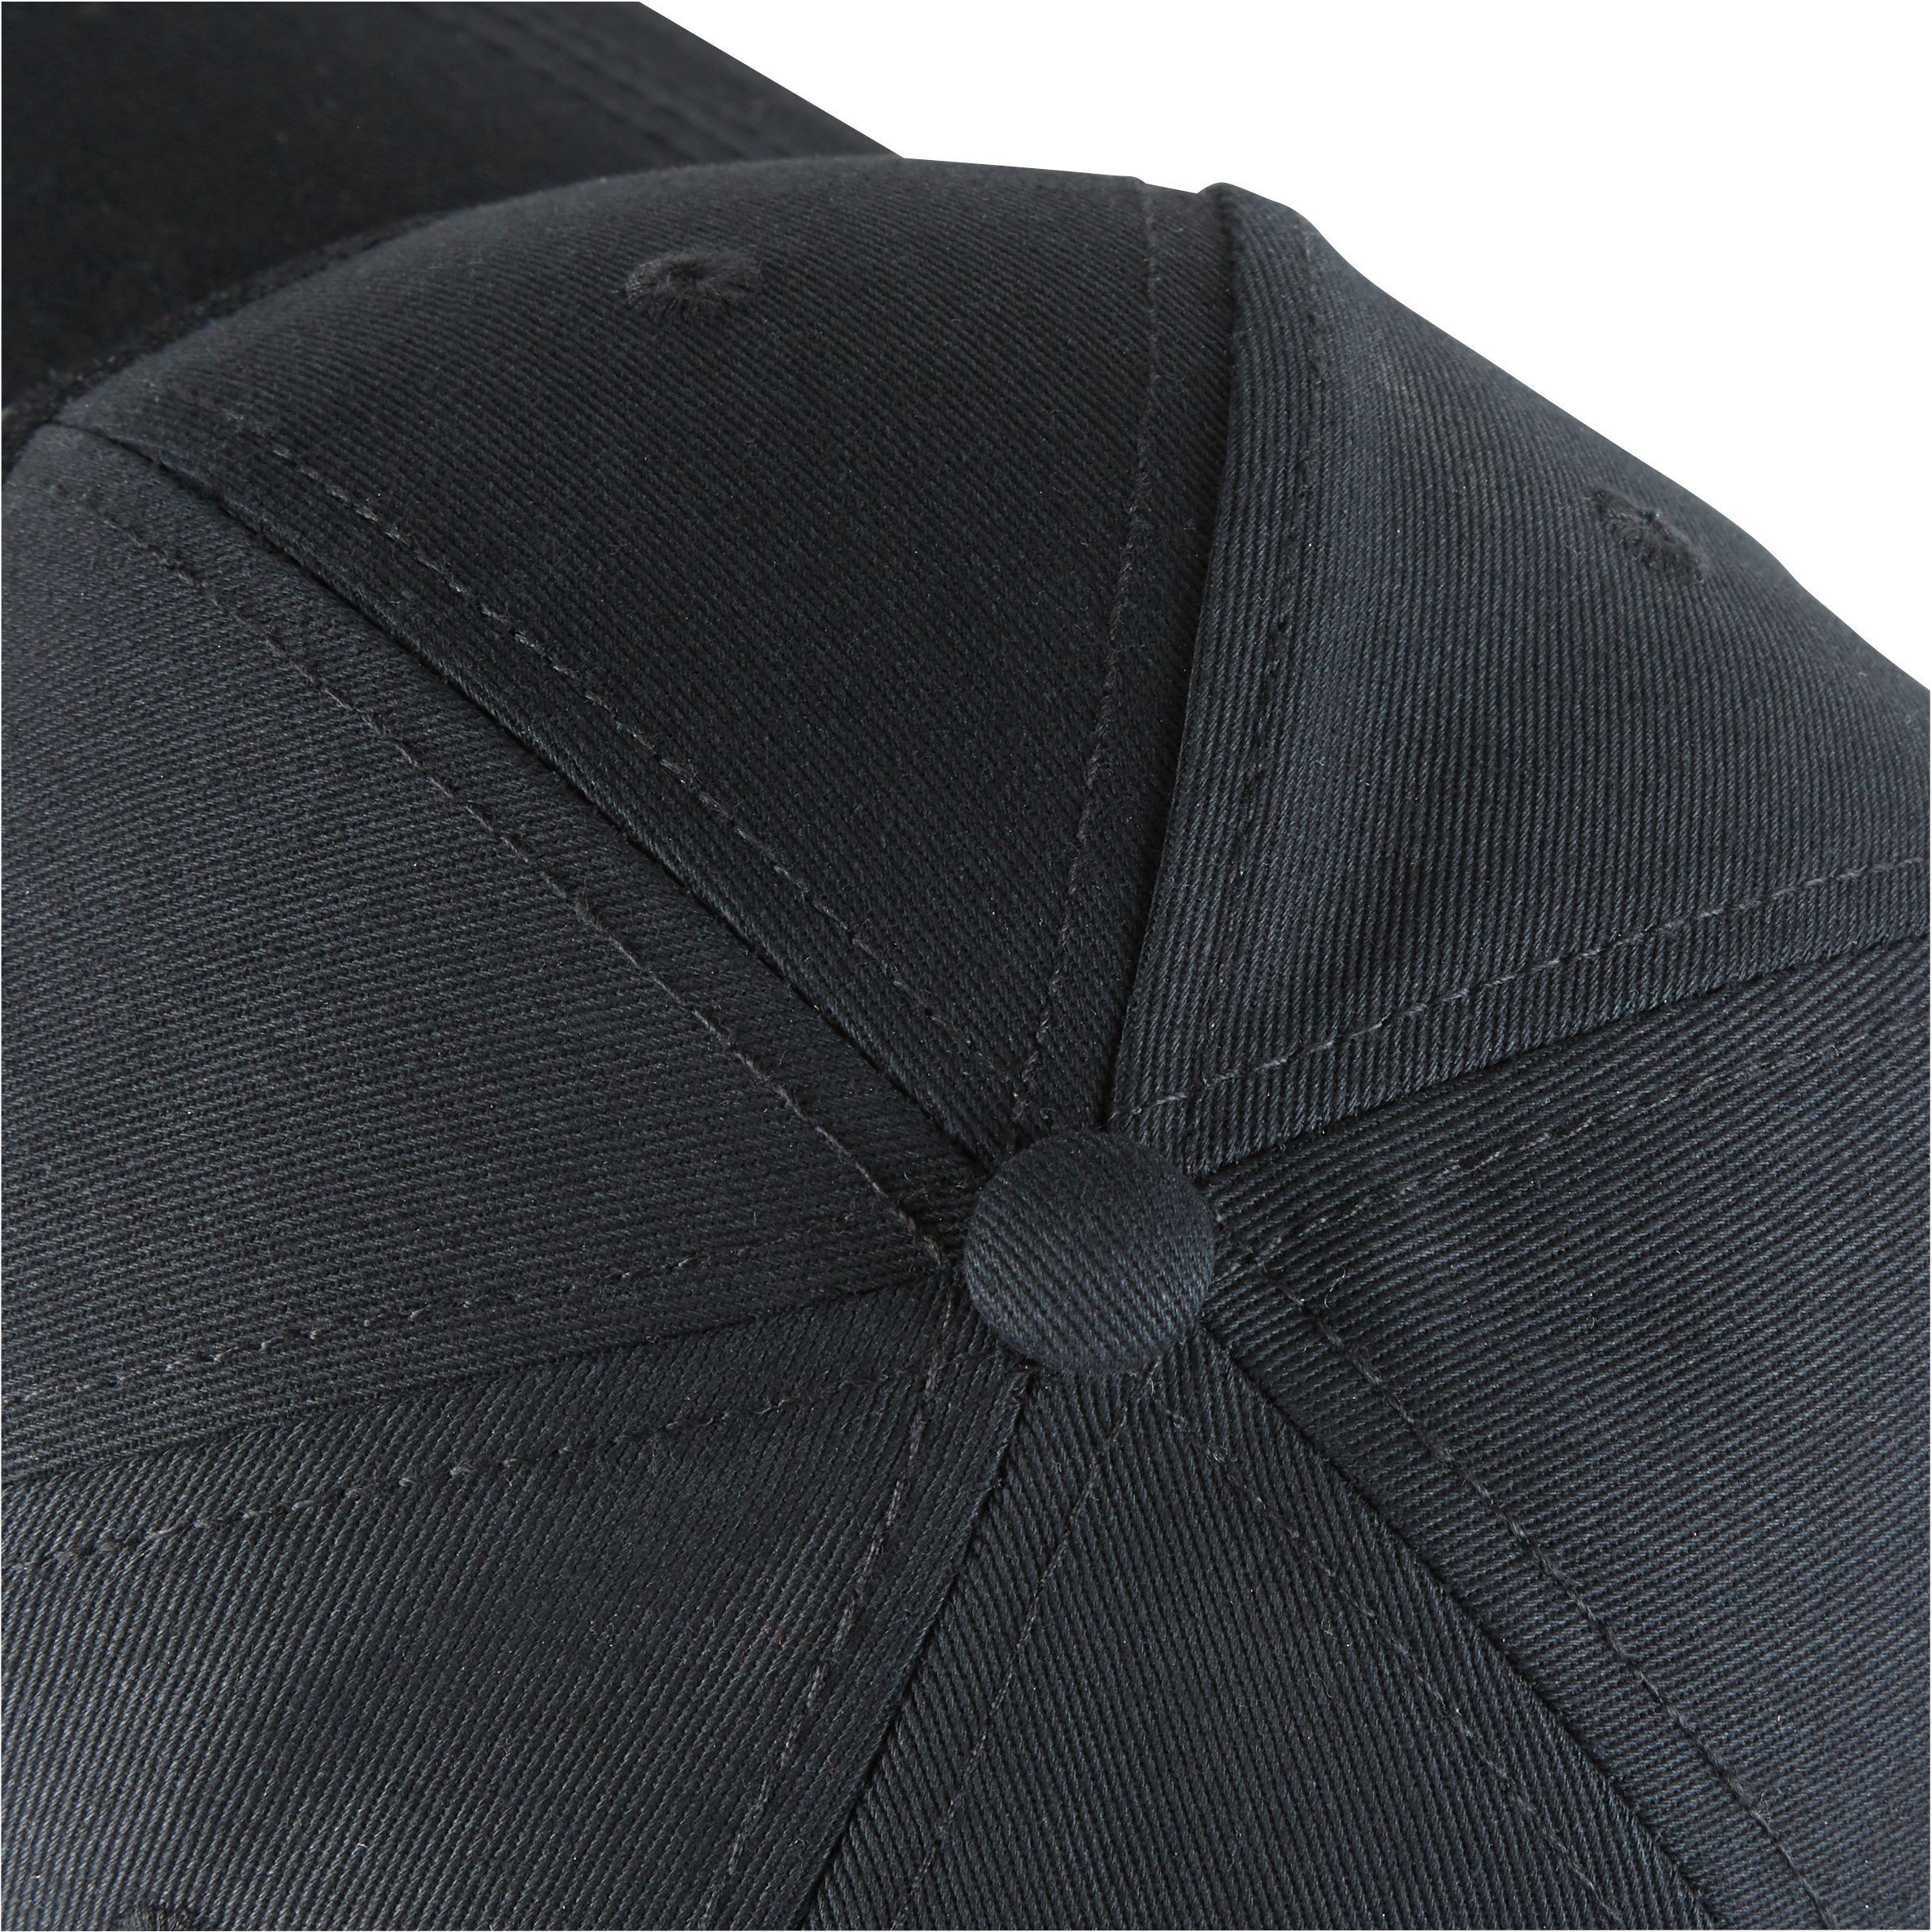 Northern Country Snapback schützt Black vor Cap Arbeiten größenverstellbar, Sonne Beauty beim